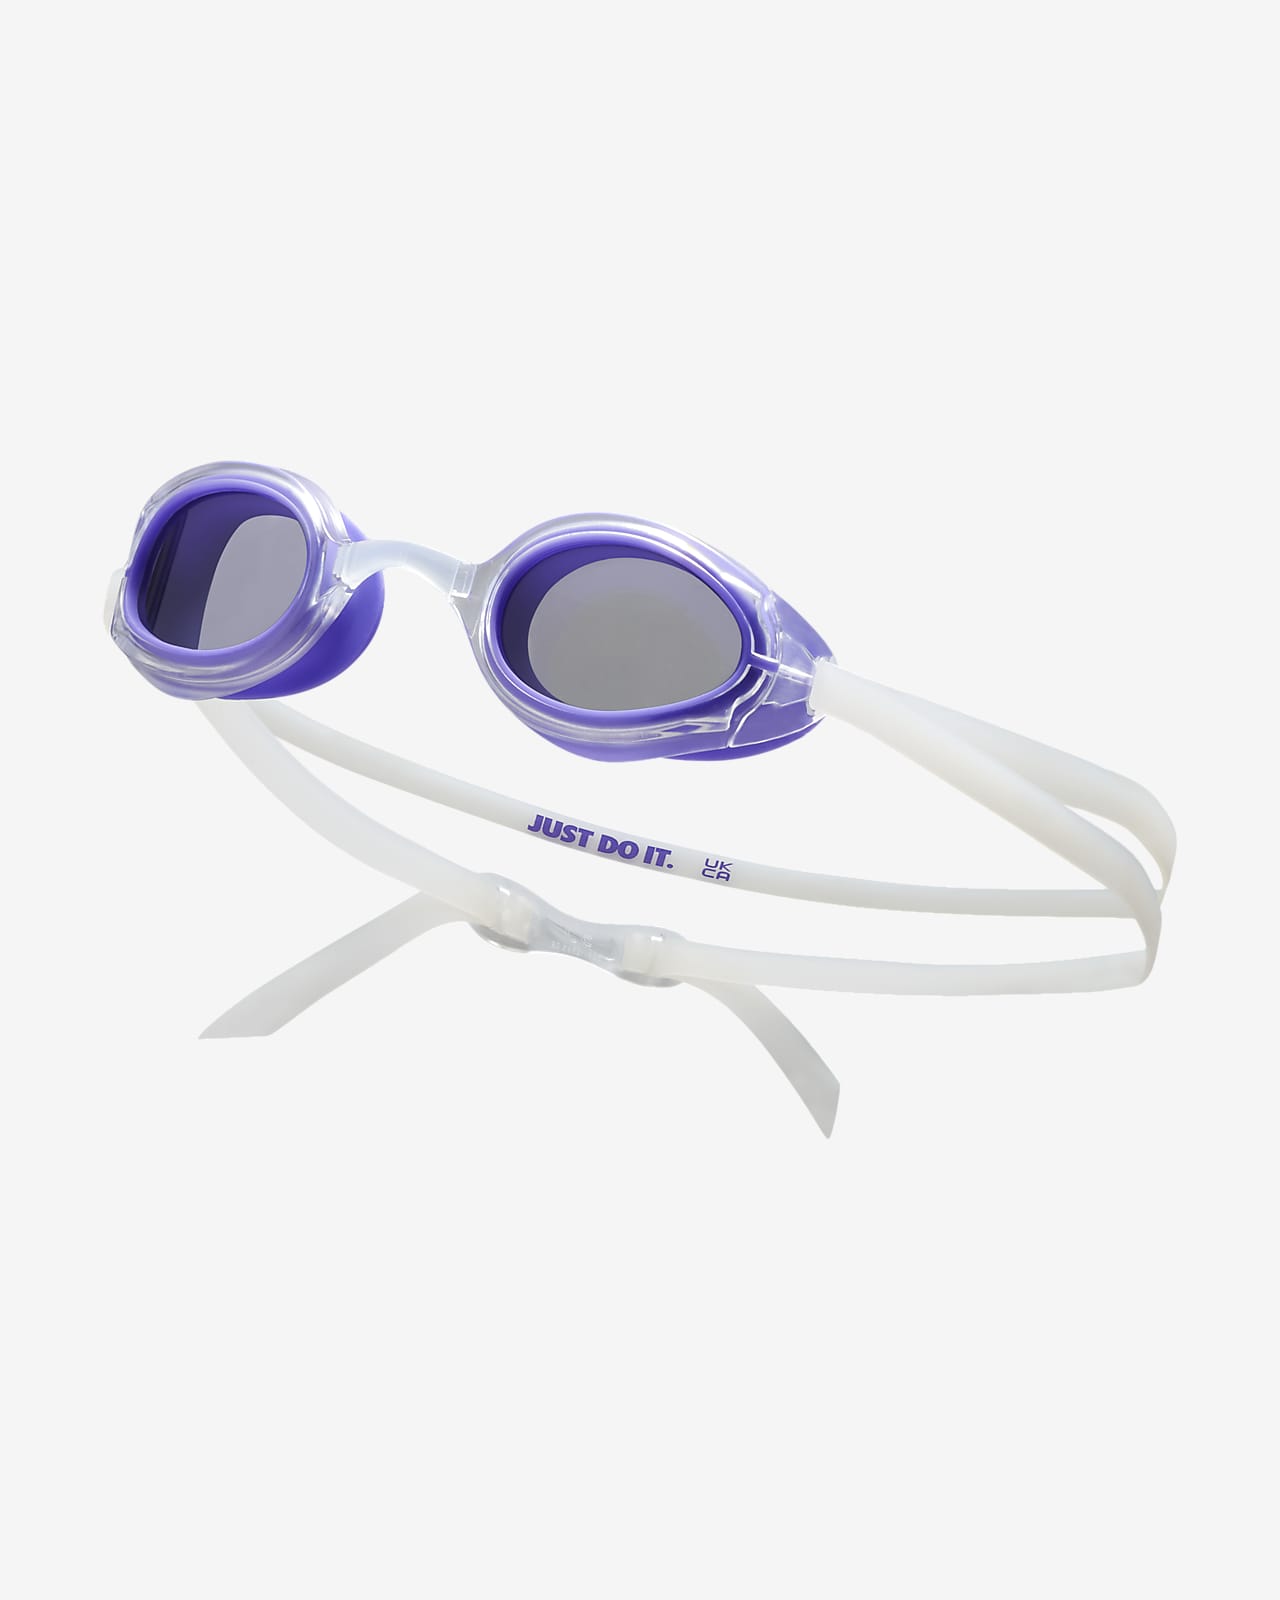 Aanpassen Beurs voorraad Nike Vapor Photochromic Swim Goggles. Nike.com